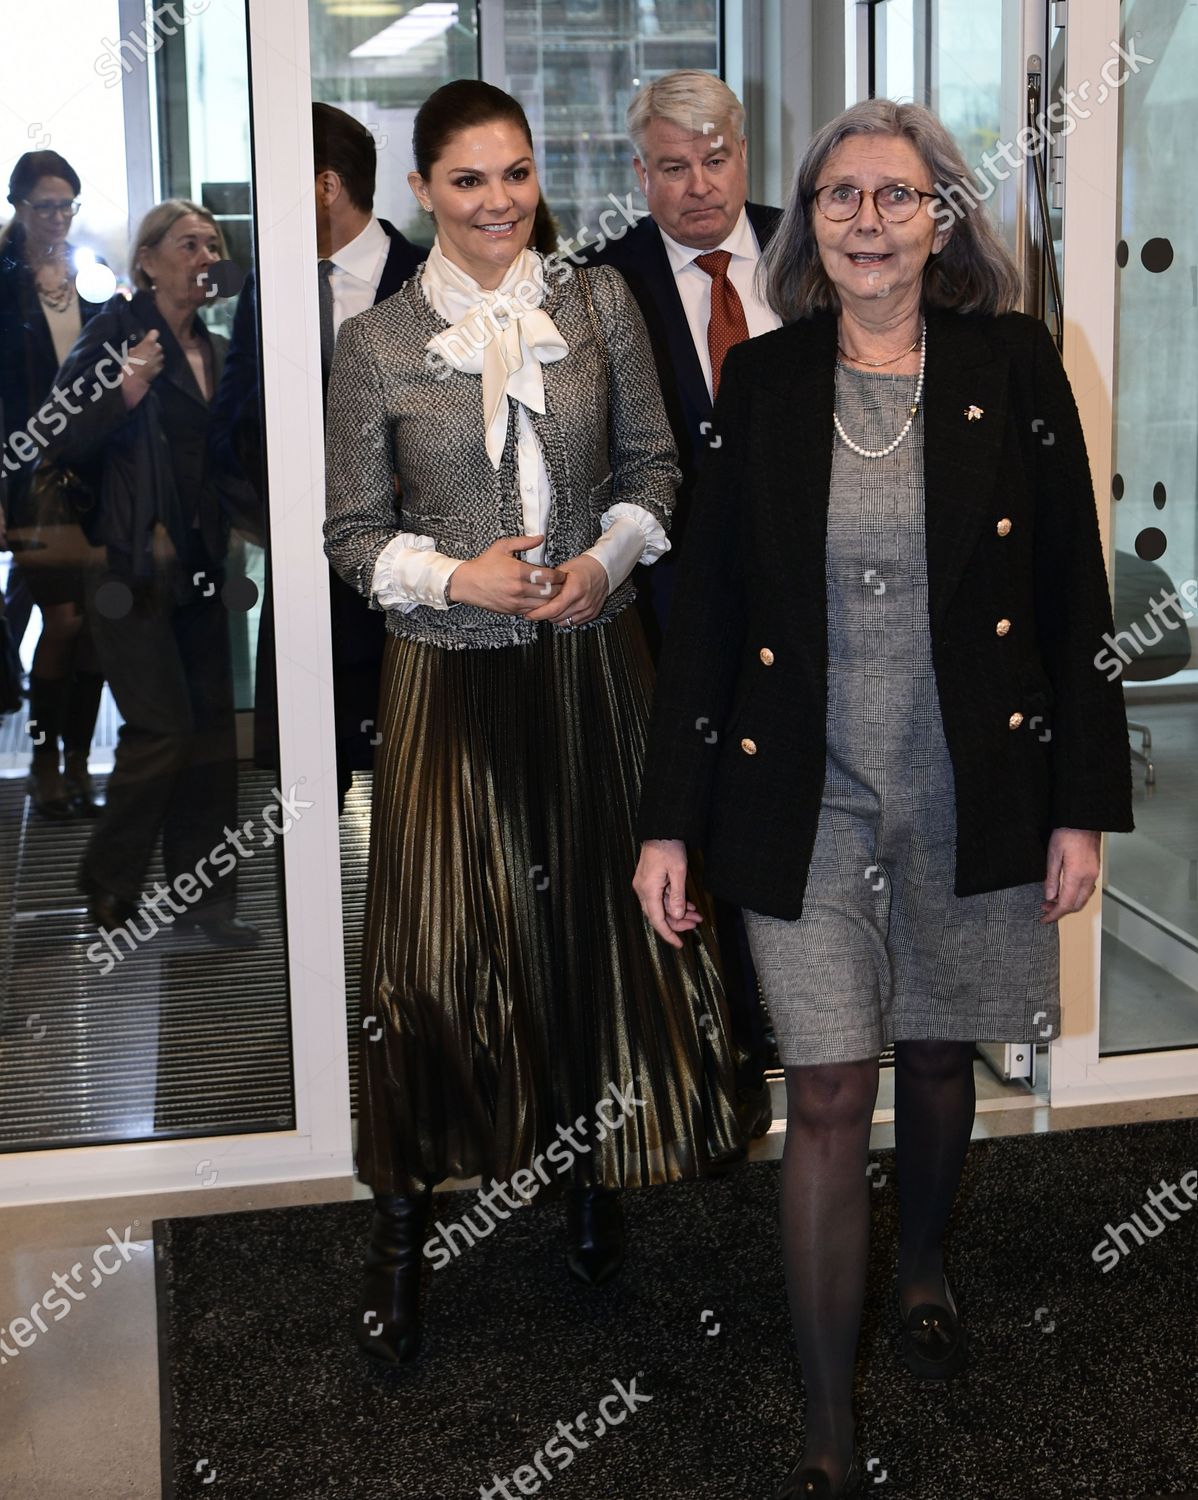 swedish-royals-visit-to-lund-sweden-shutterstock-editorial-10543459k.jpg